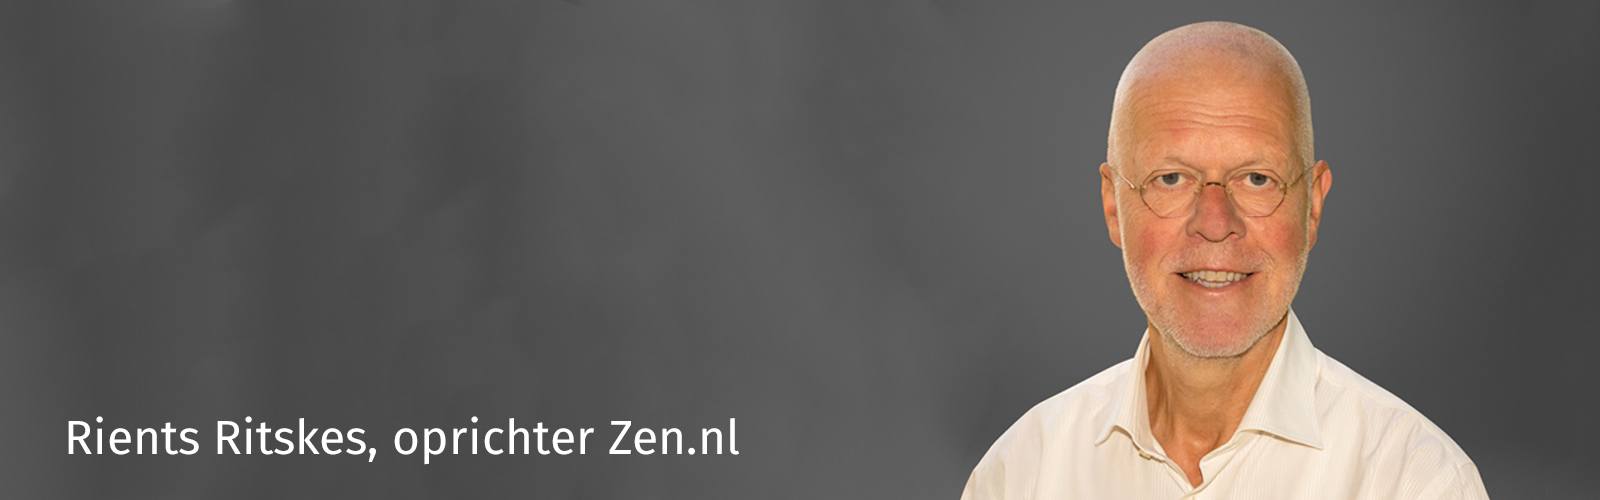 Rients Ranzen Ritskes, zenmeester, schrijver en oprichter van Zen.nl